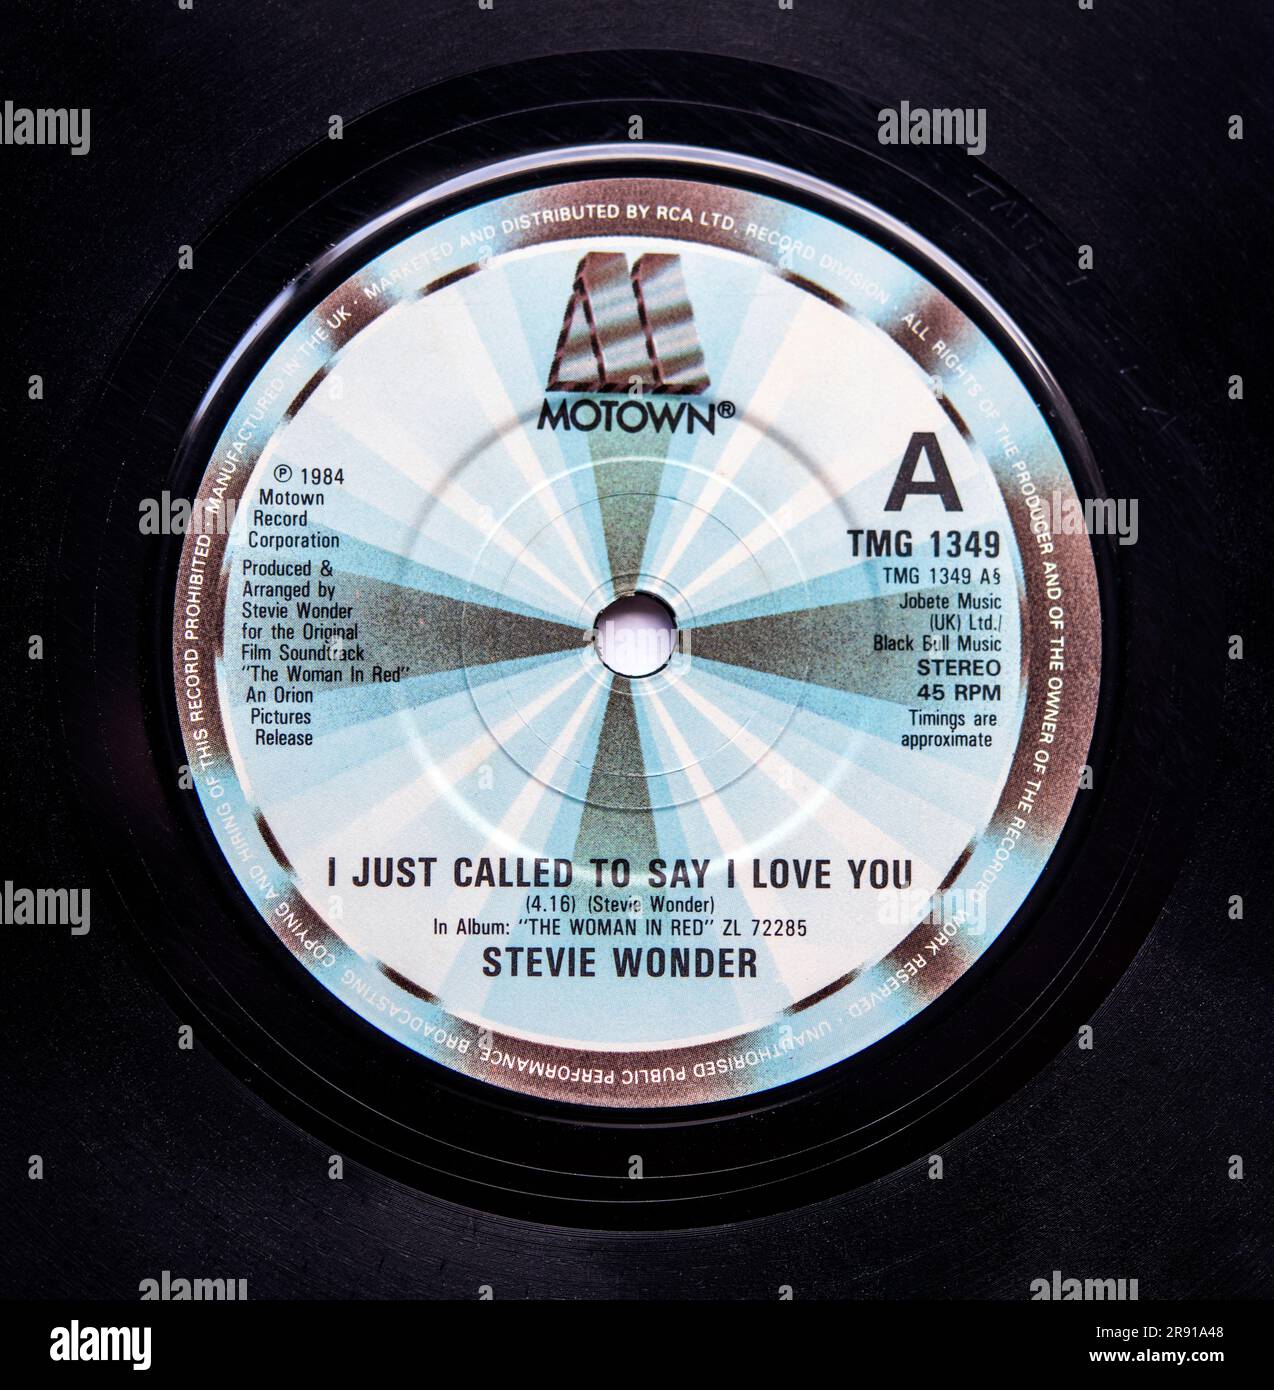 Sabe a Tradução da Música: I Just Called to Say I Love You - Stevie W